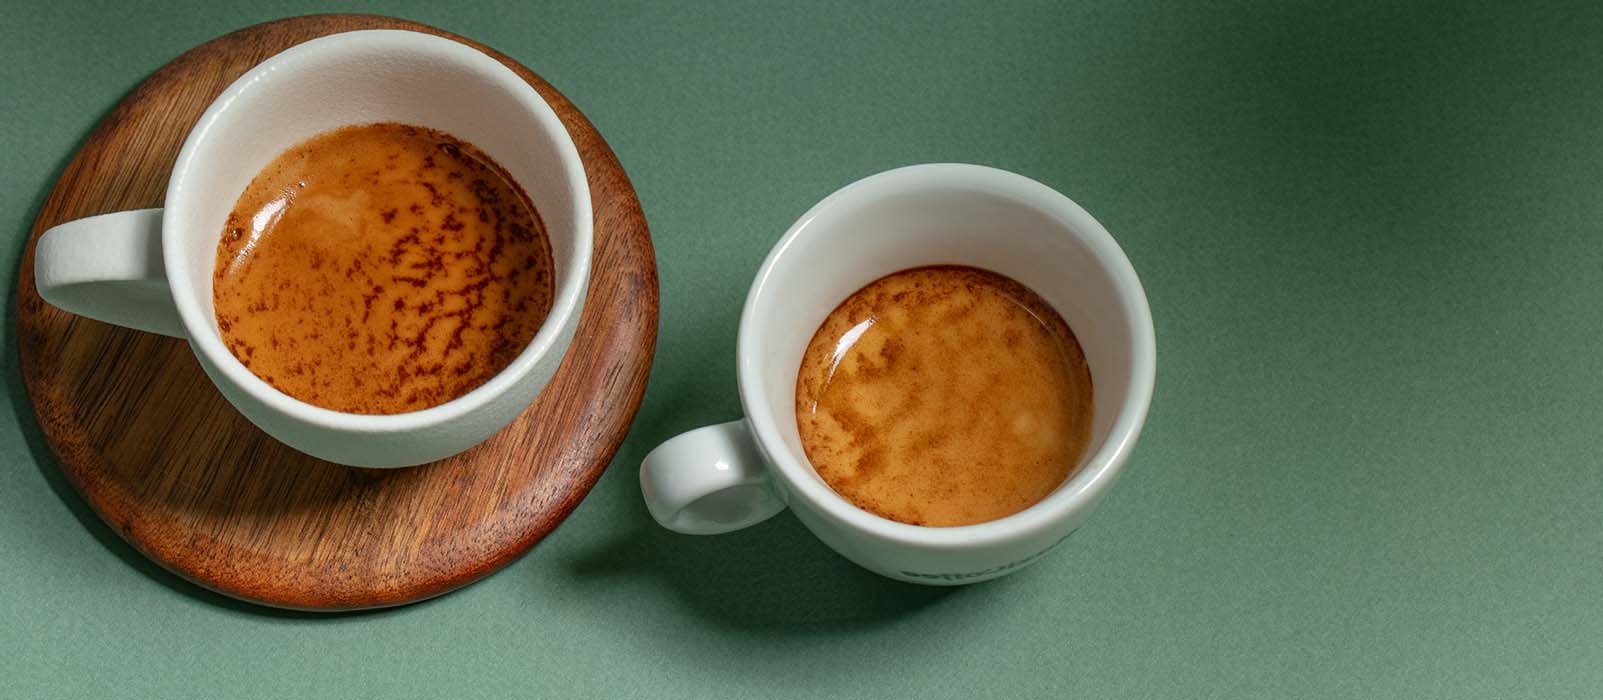 ristretto vs espresso